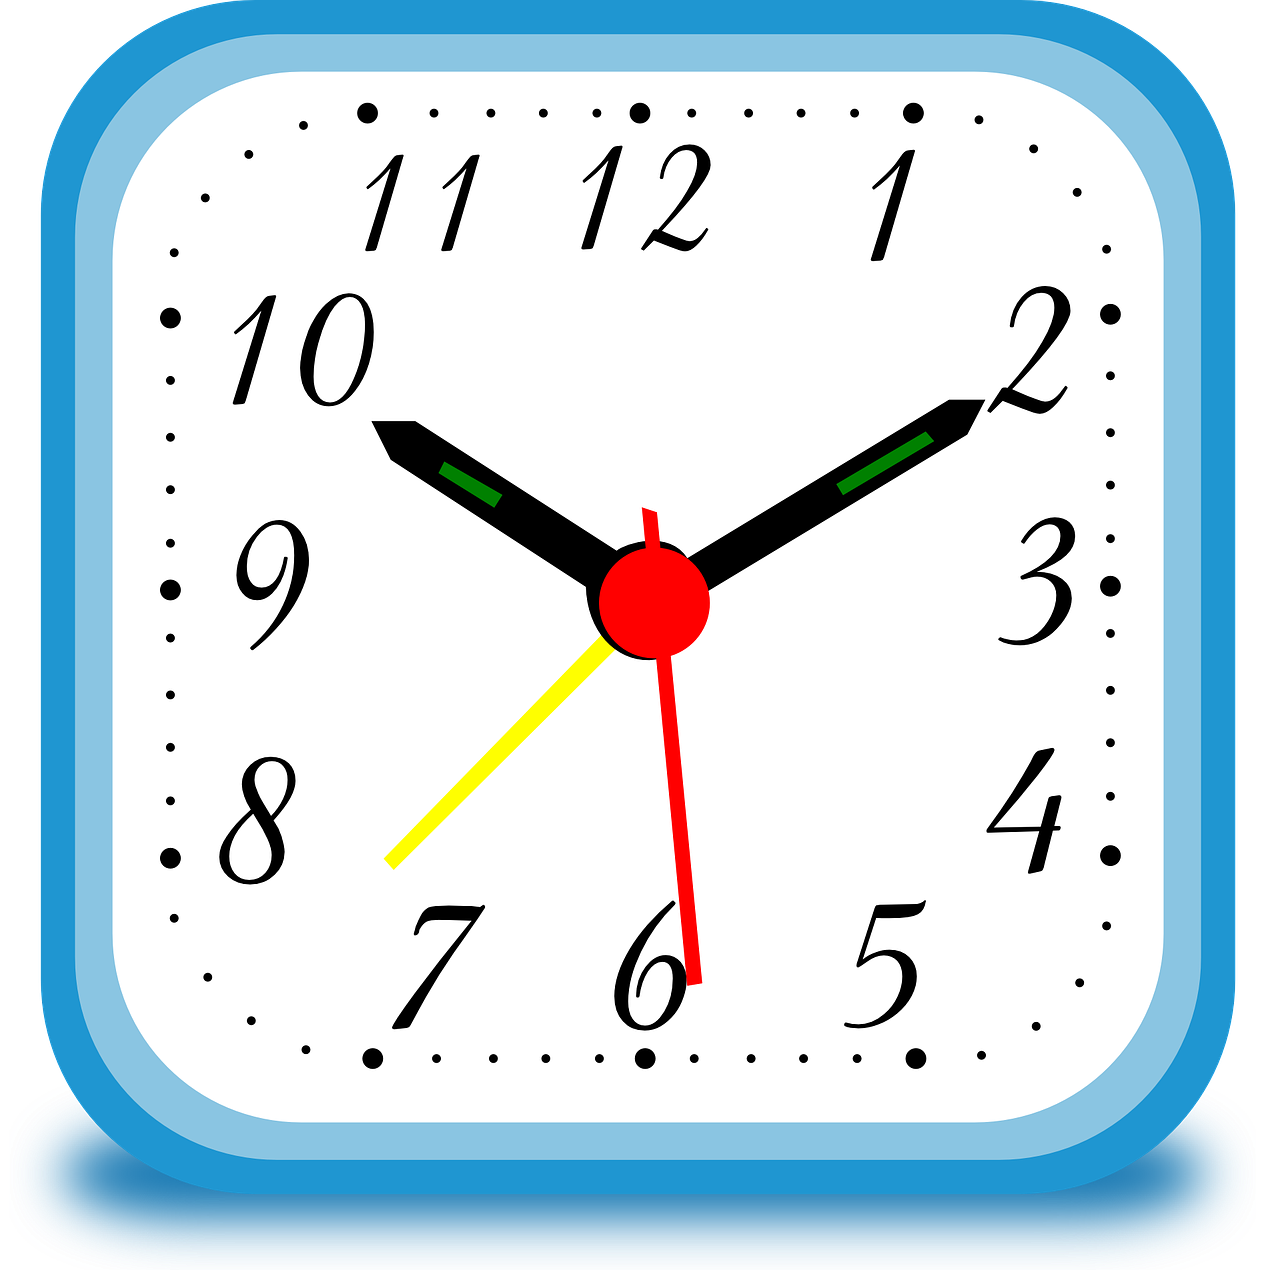 Laikrodis, Kvadratas, Laikas, Instrumentas, Signalizacija, Rankos, Valandos, Minutės, Sekundes, Mėlynas